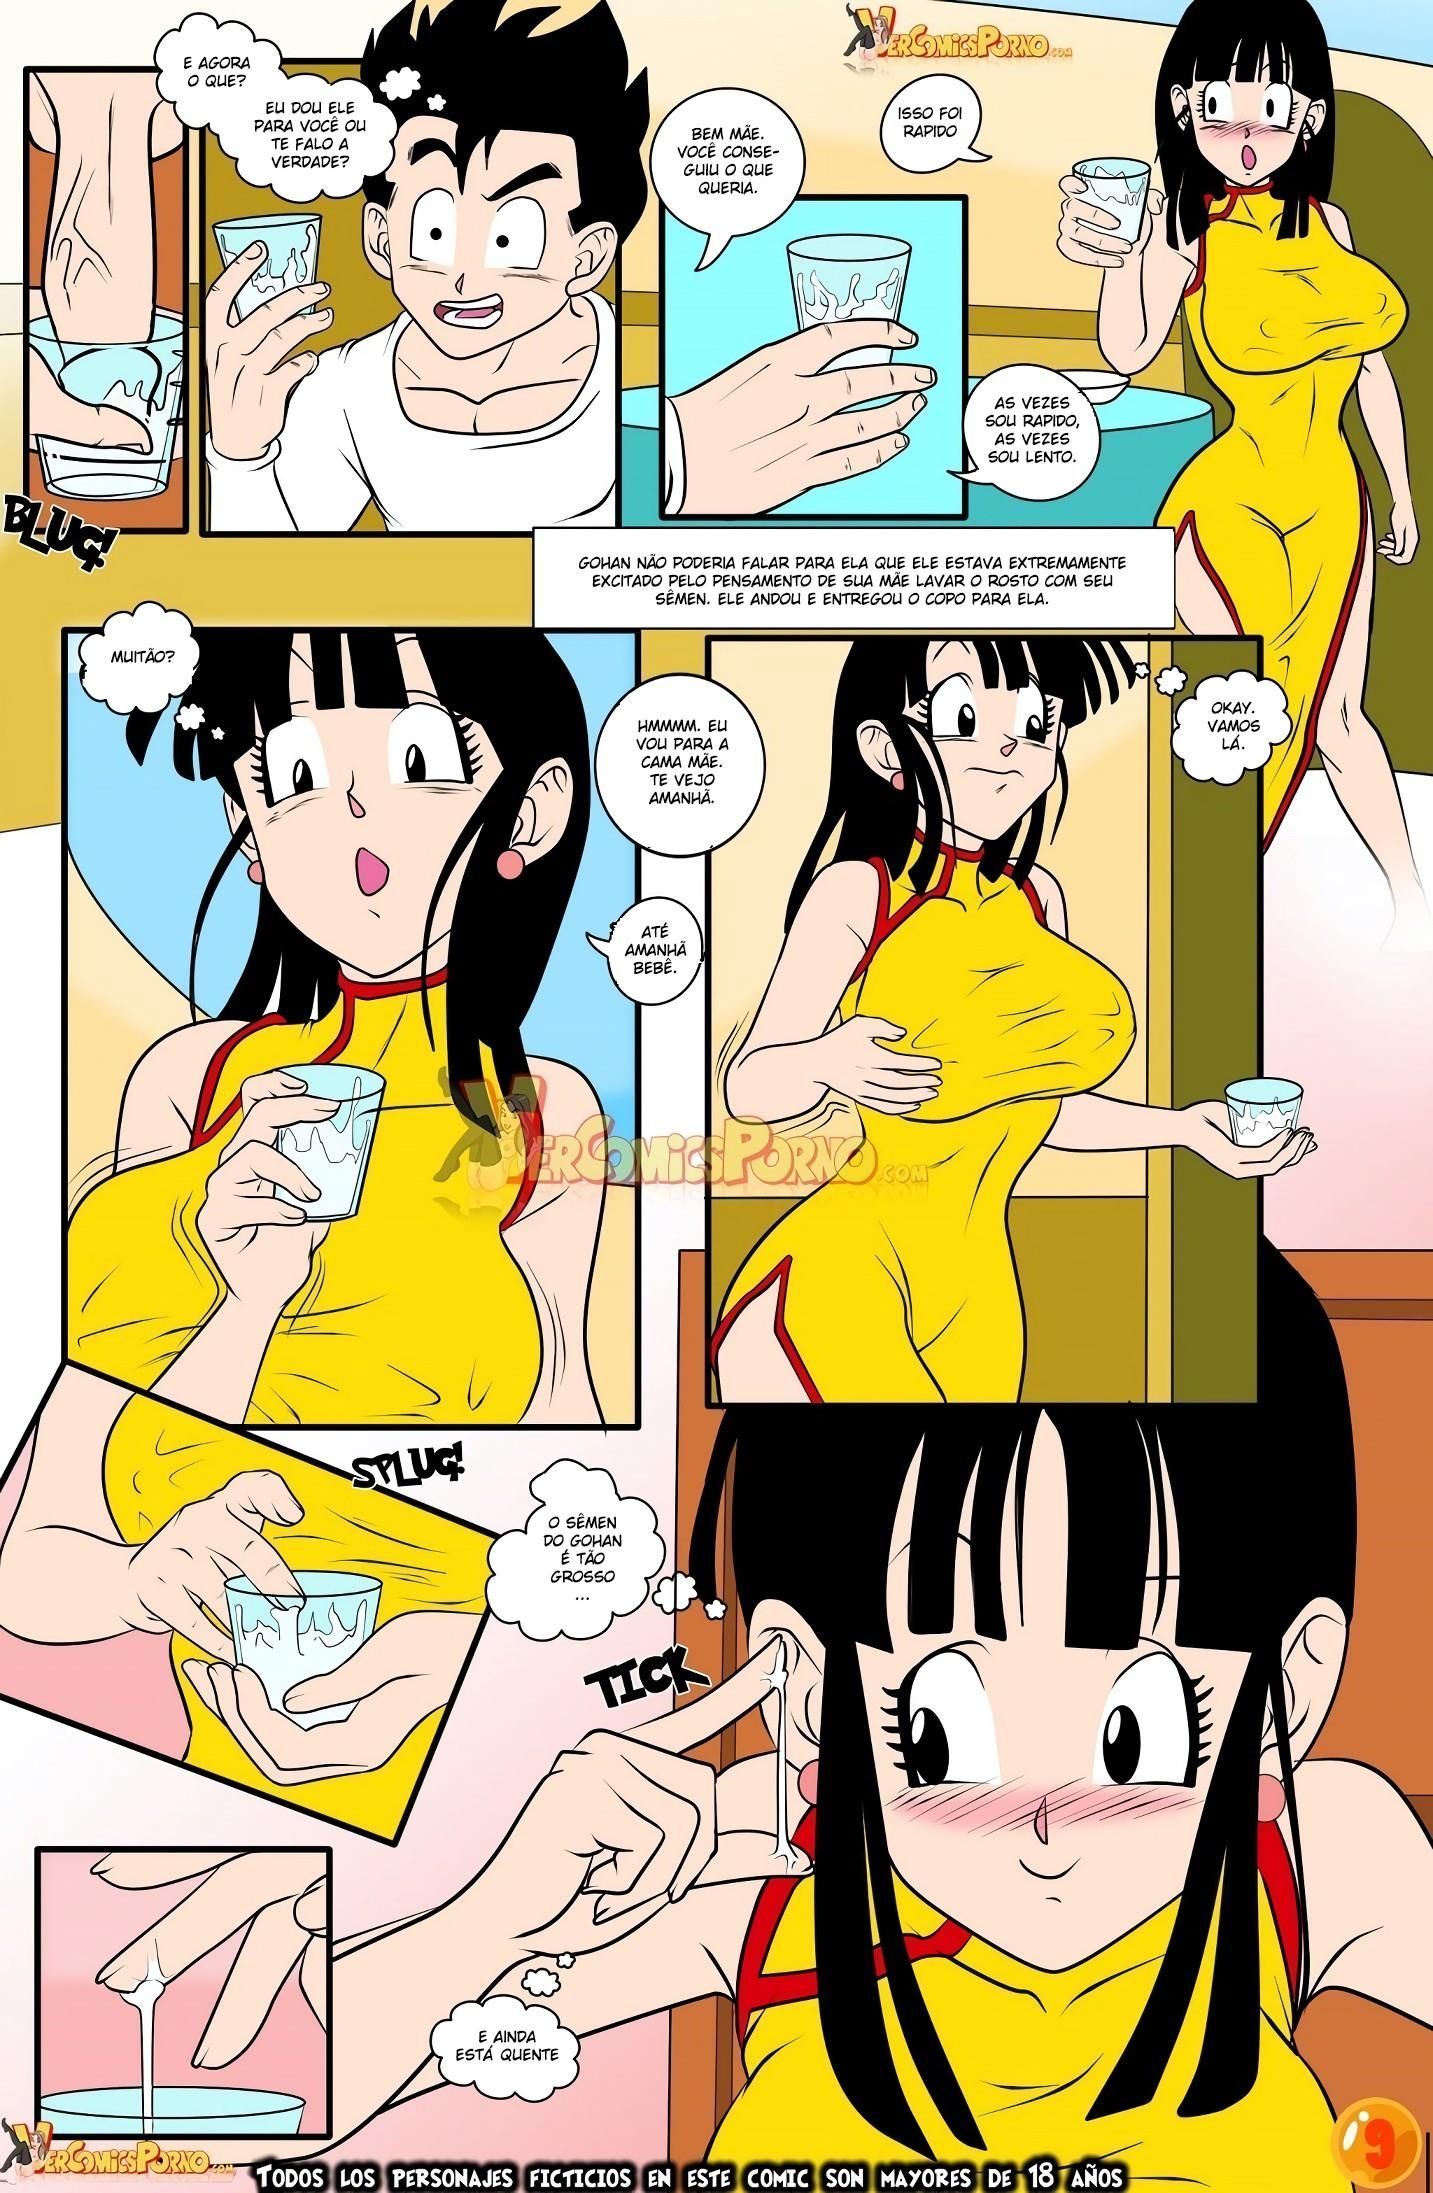 Milk Milk – Dragon Ball - Eu quero a esperma do Gohan